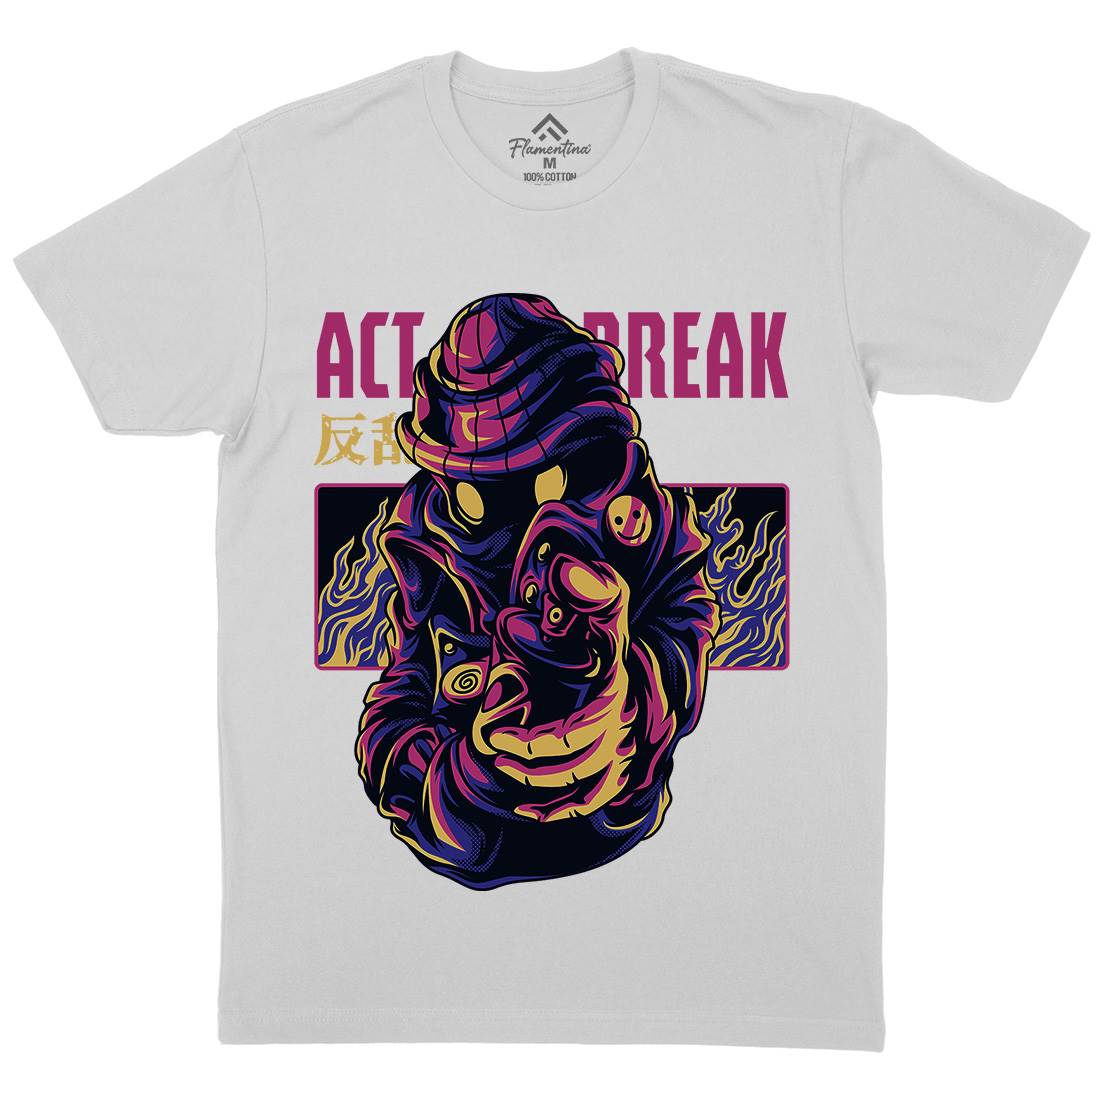 Act Break Mens Crew Neck T-Shirt Graffiti D700